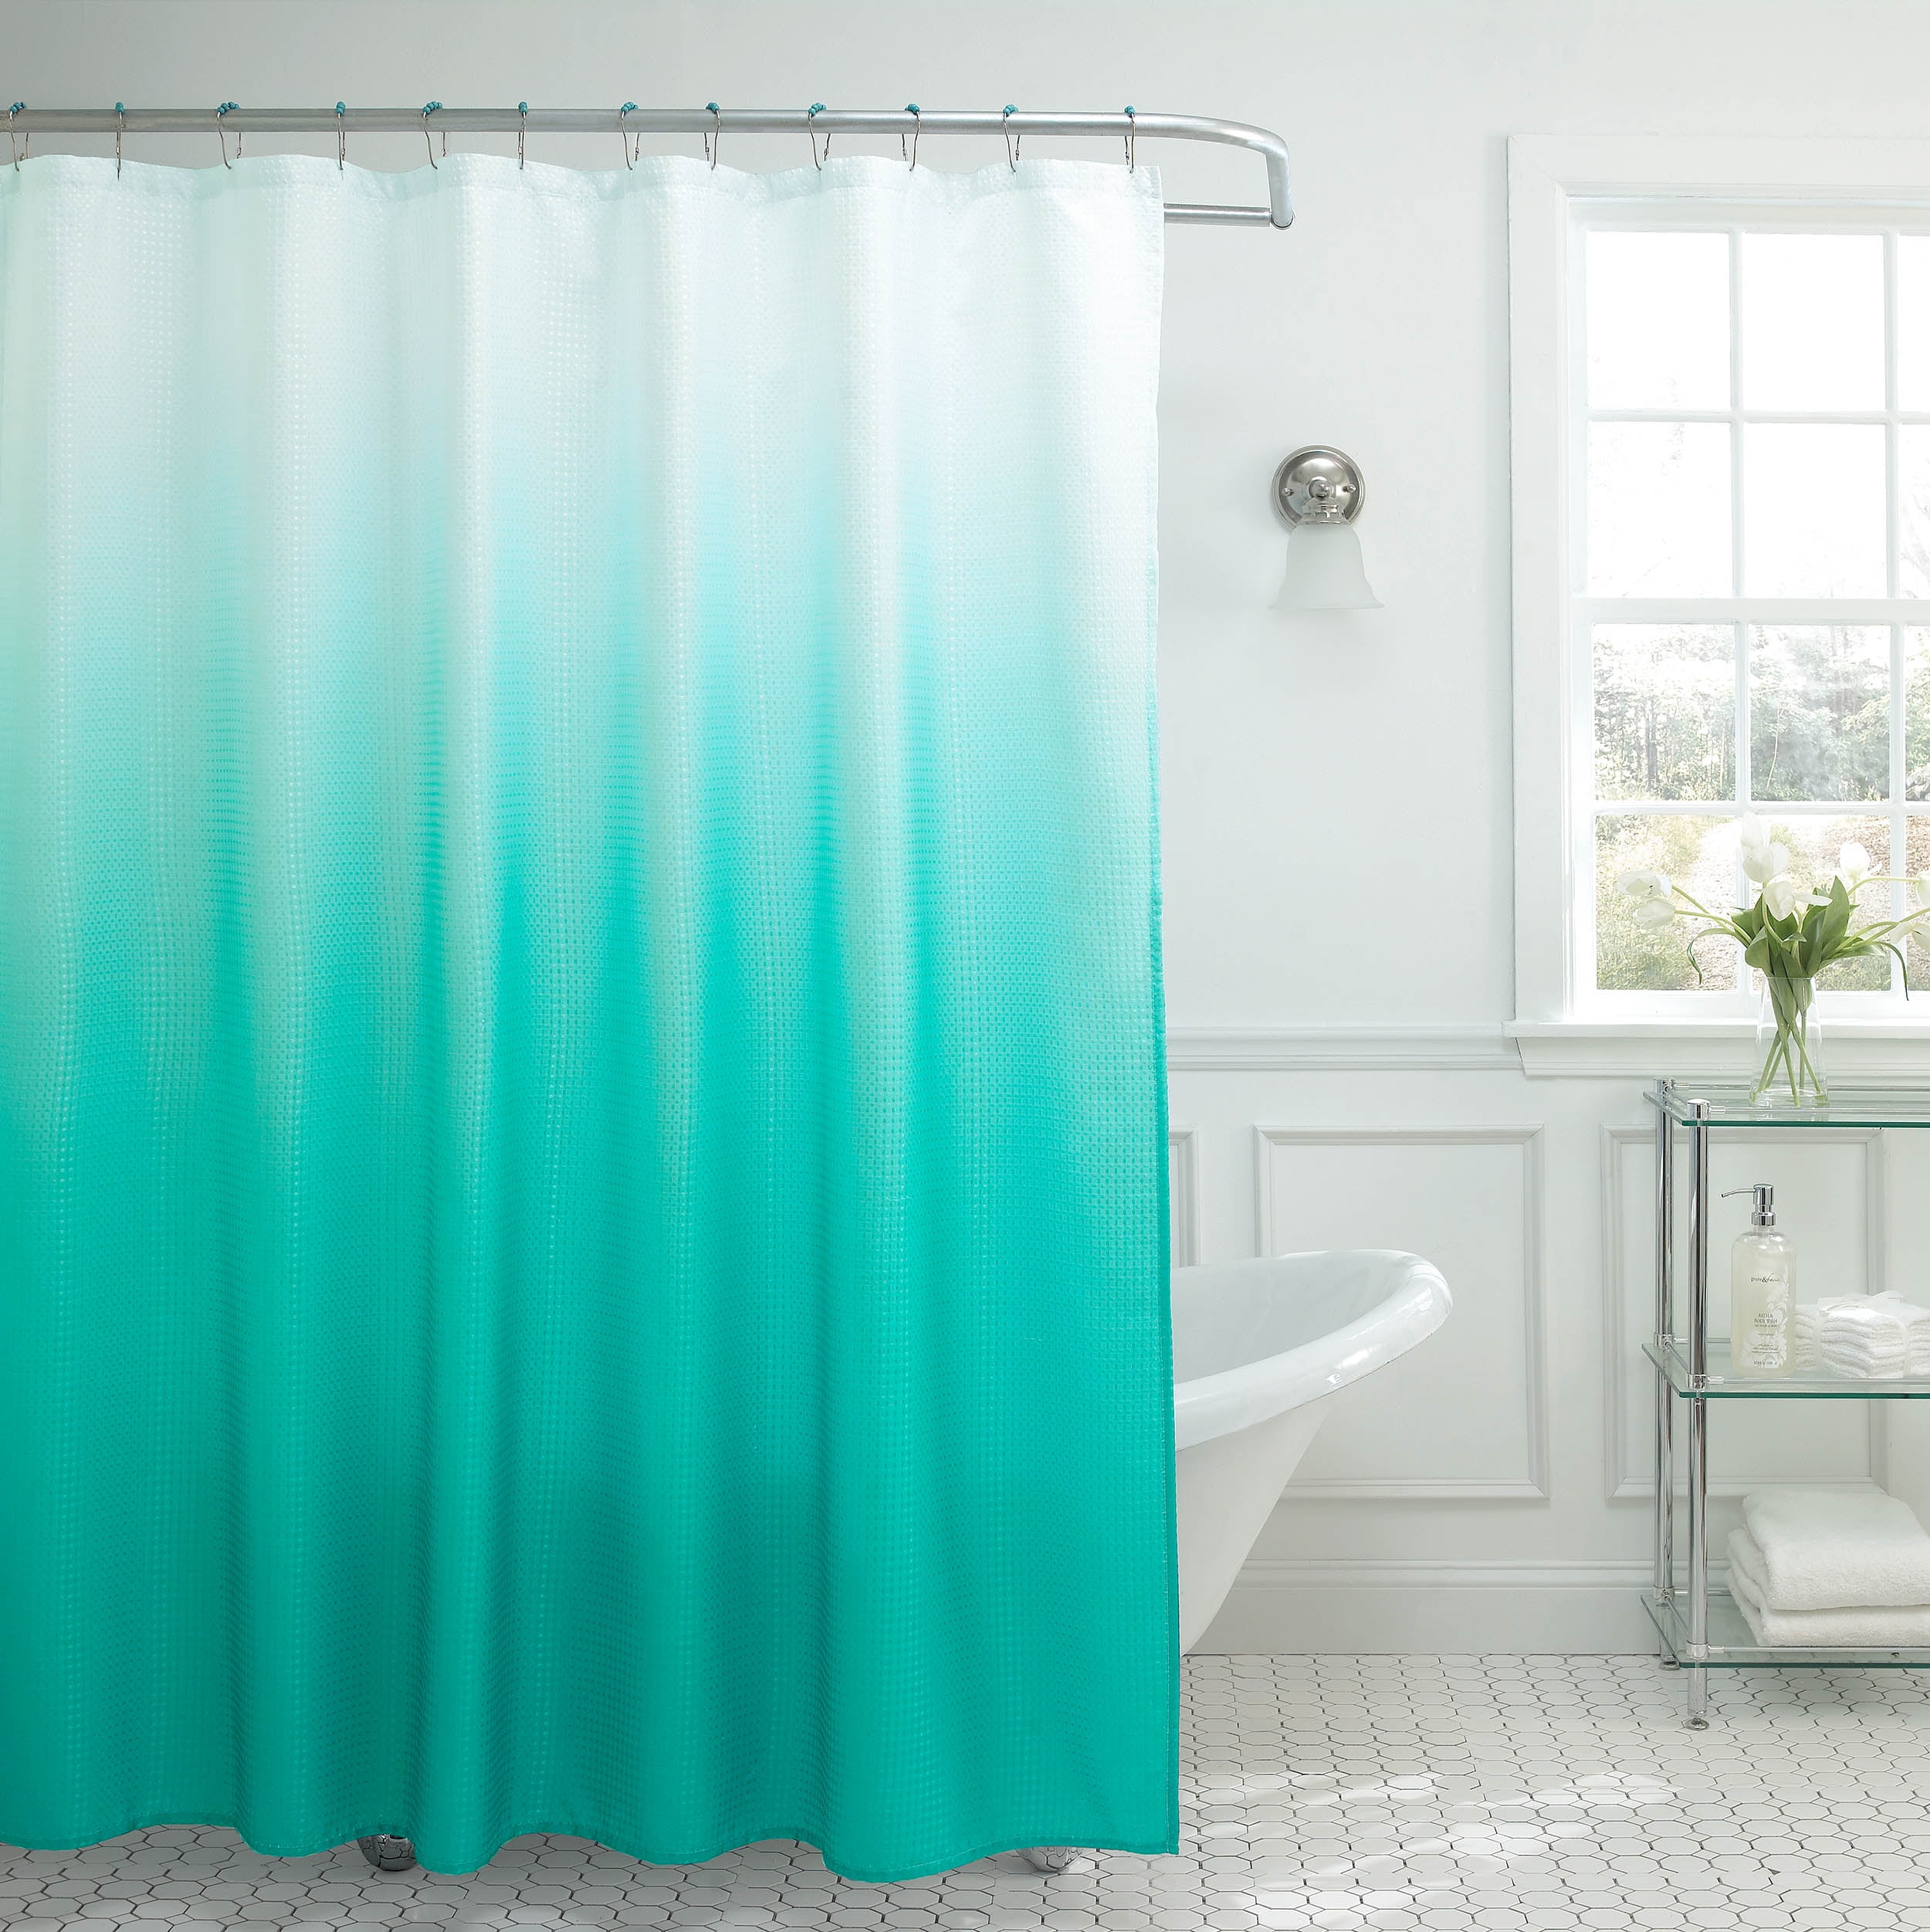 Creative Sunflowers Bathtub with Bubbles Shower Curtain Set Bathroom Decor 72" 